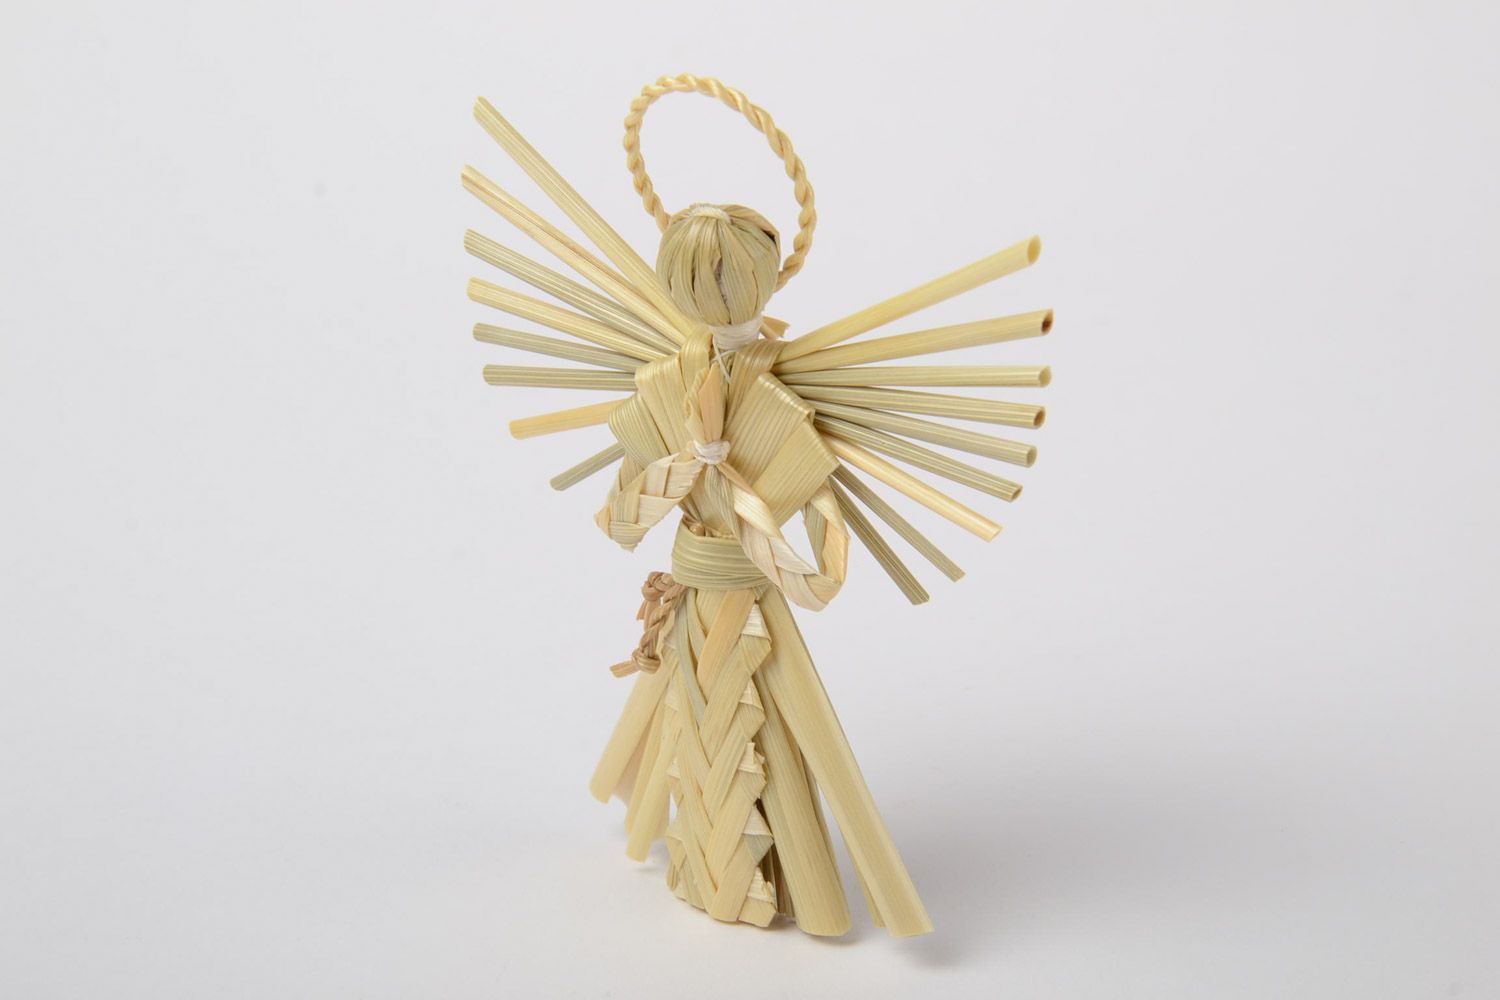 Ангел хранитель из соломы красивый небольшой фигурка для декора ручной работы фото 2